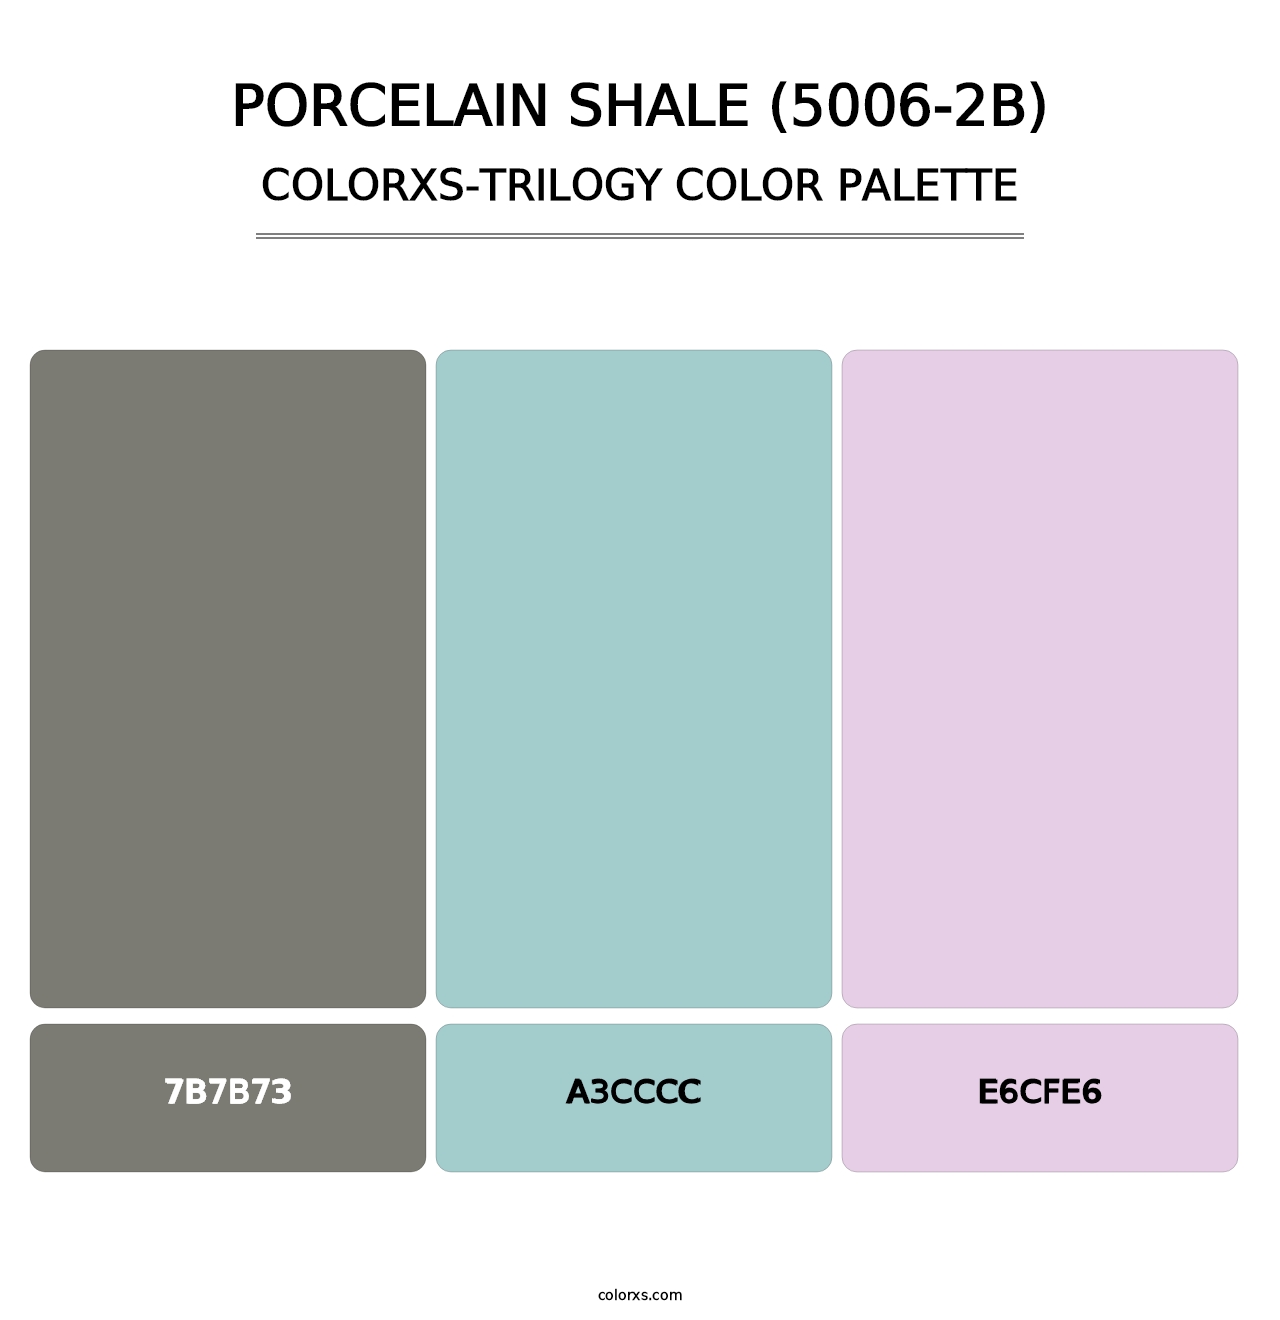 Porcelain Shale (5006-2B) - Colorxs Trilogy Palette